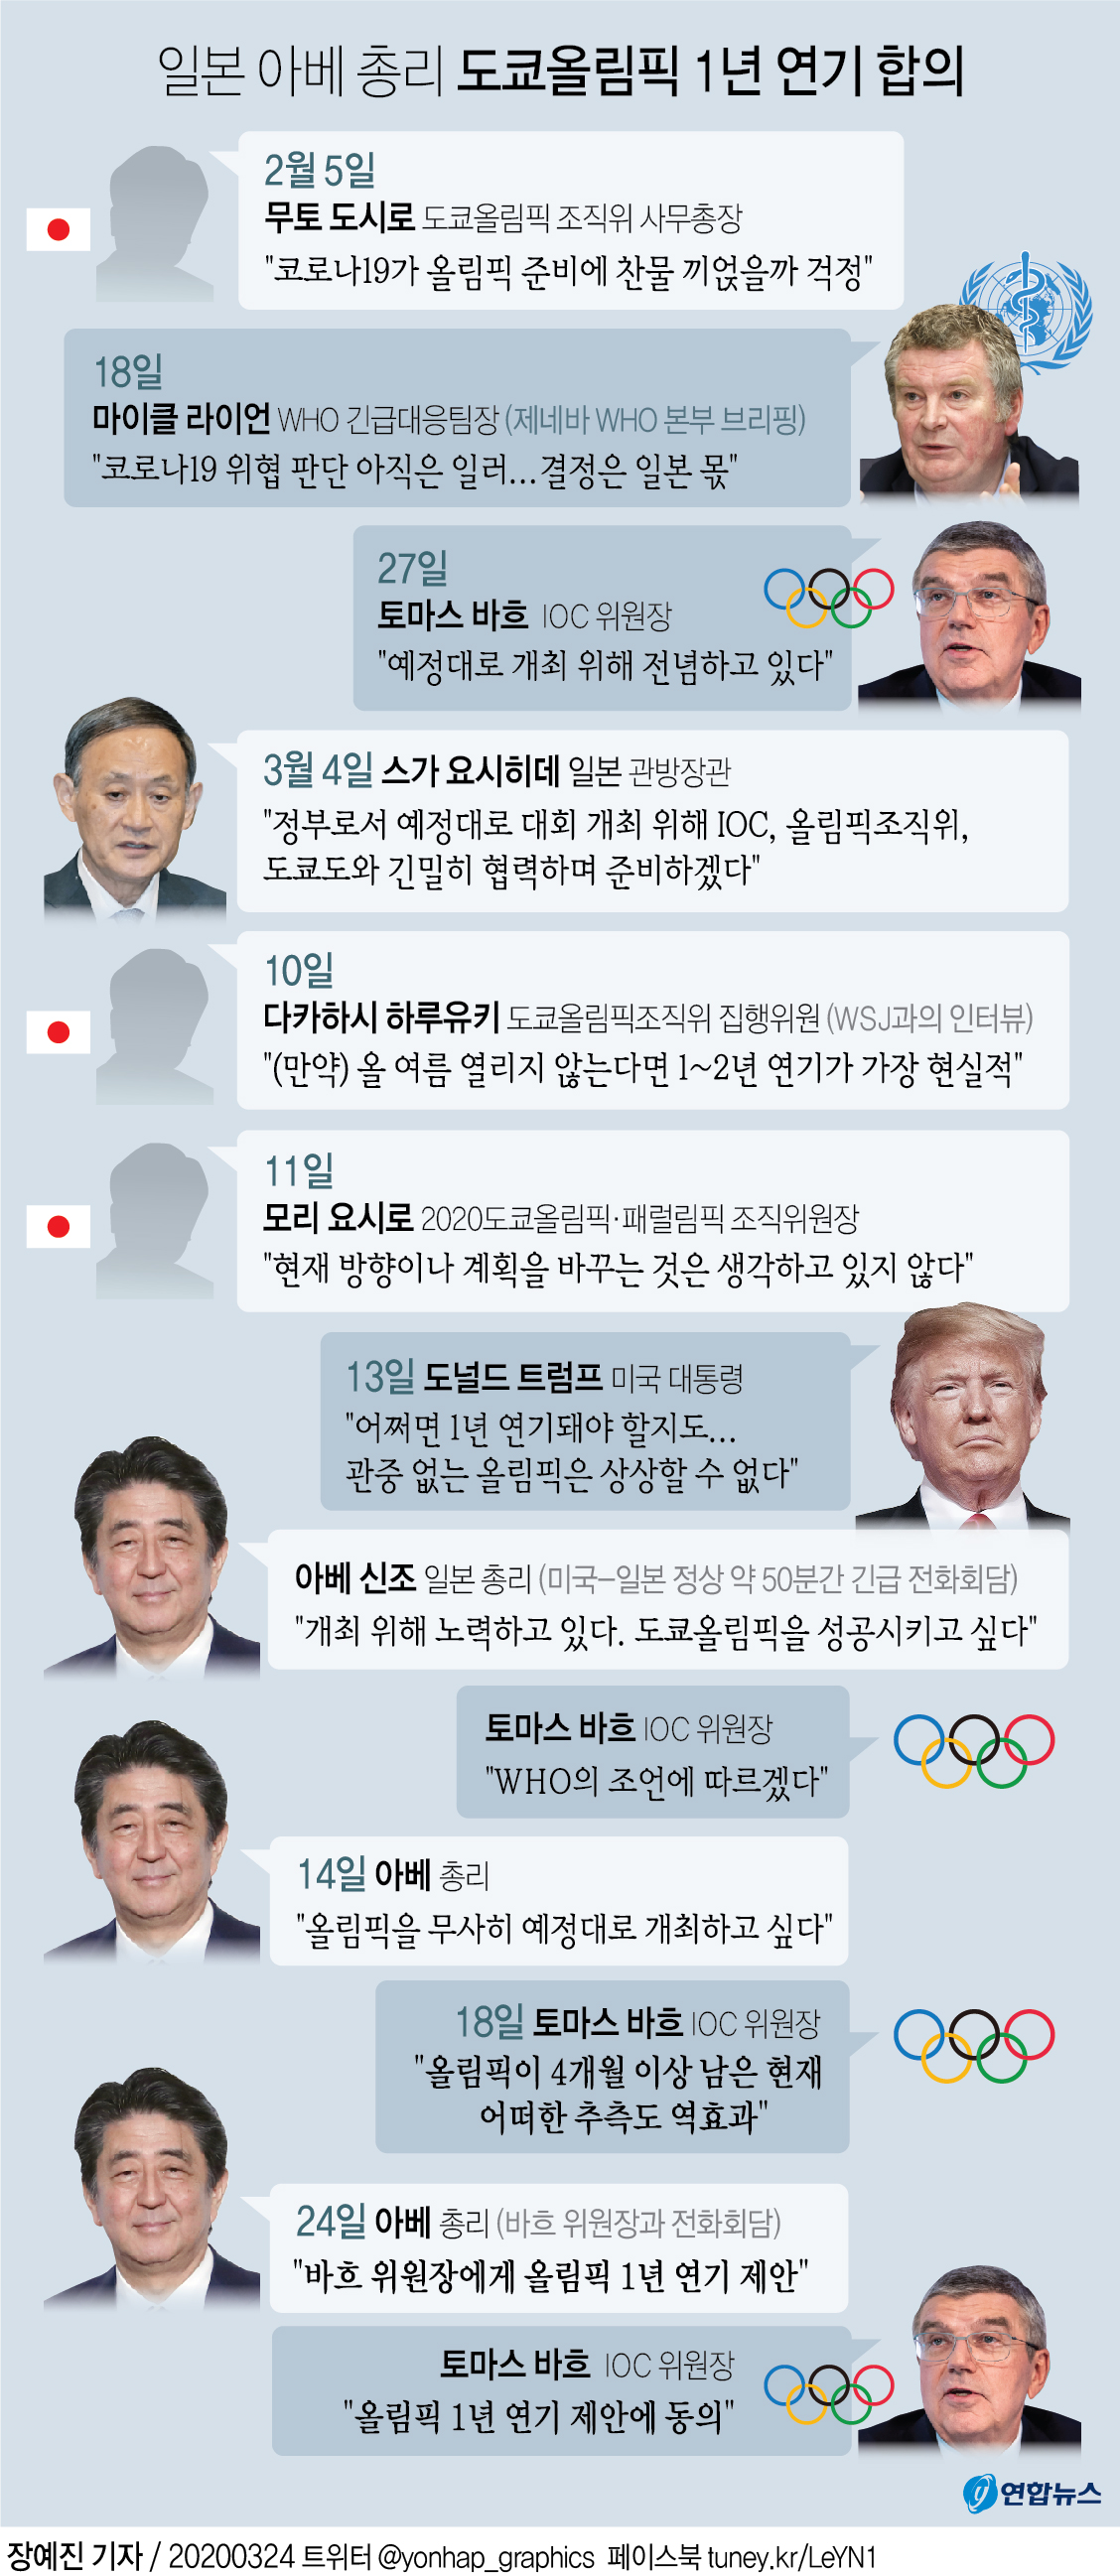 [그래픽] 일본 아베 총리 도쿄올림픽 1년 연기 합의